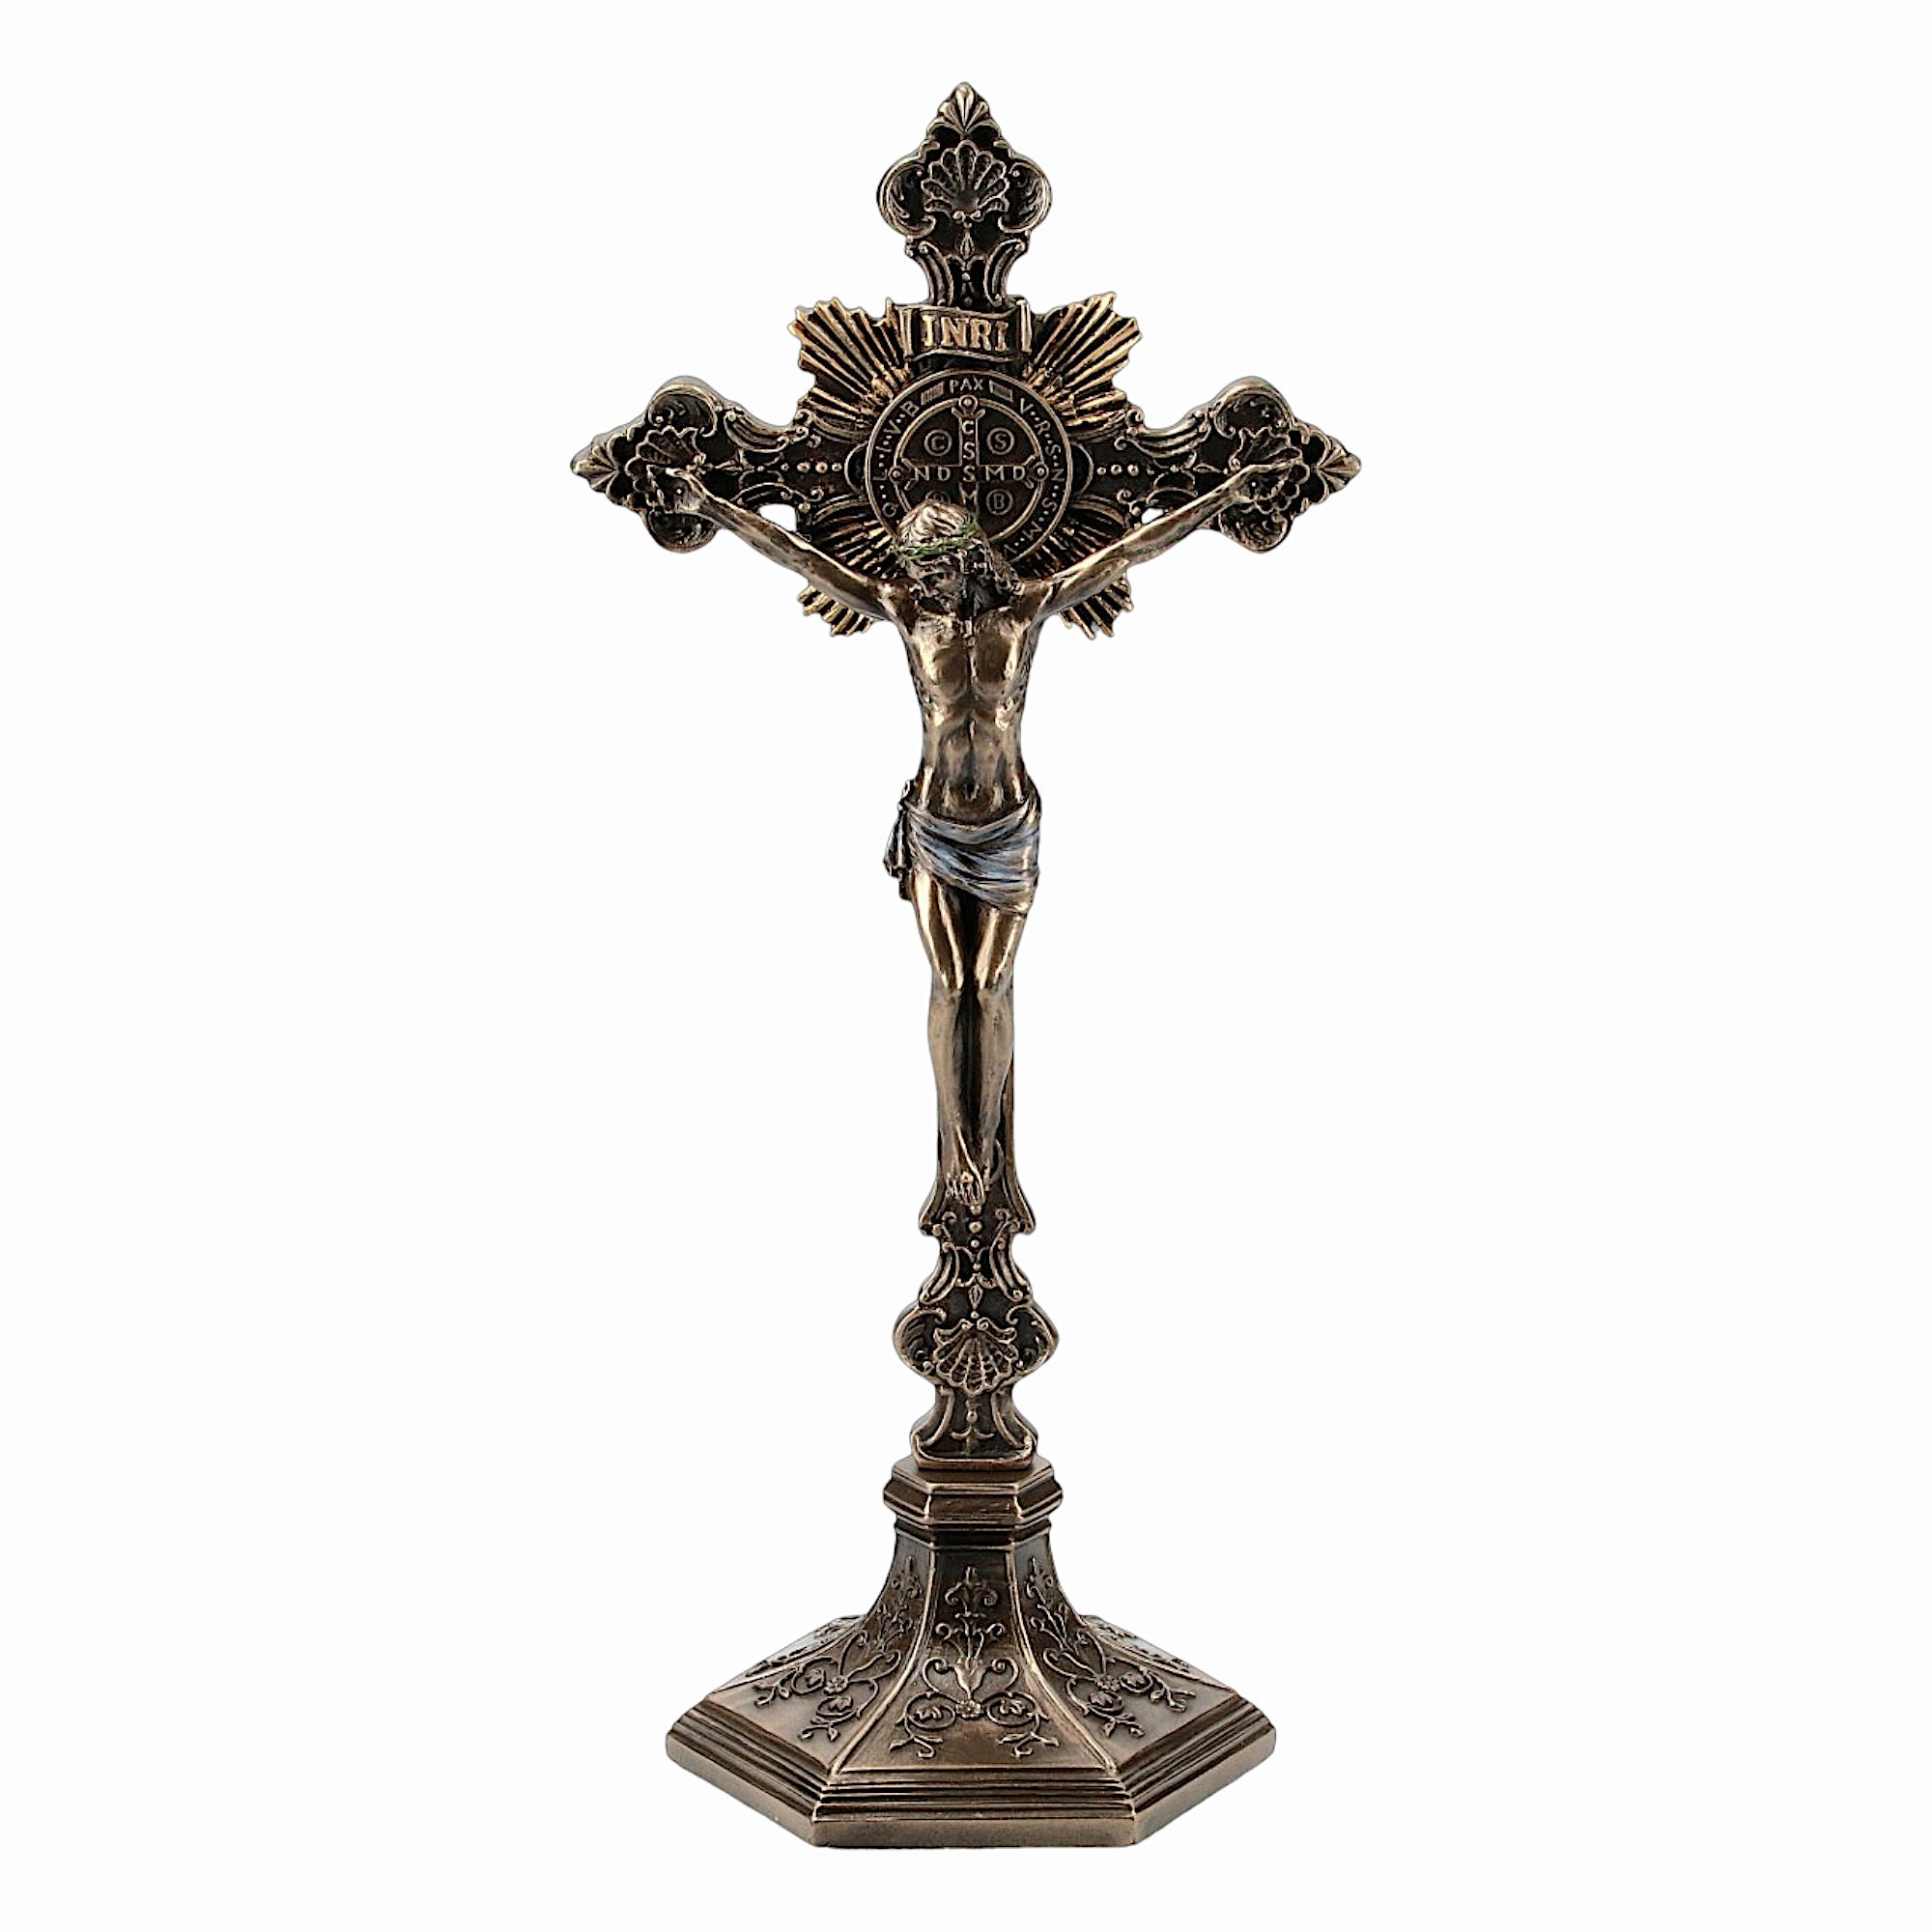 Katholische Tischkreuz-Ornamente, katholischer Stil, Dekoration